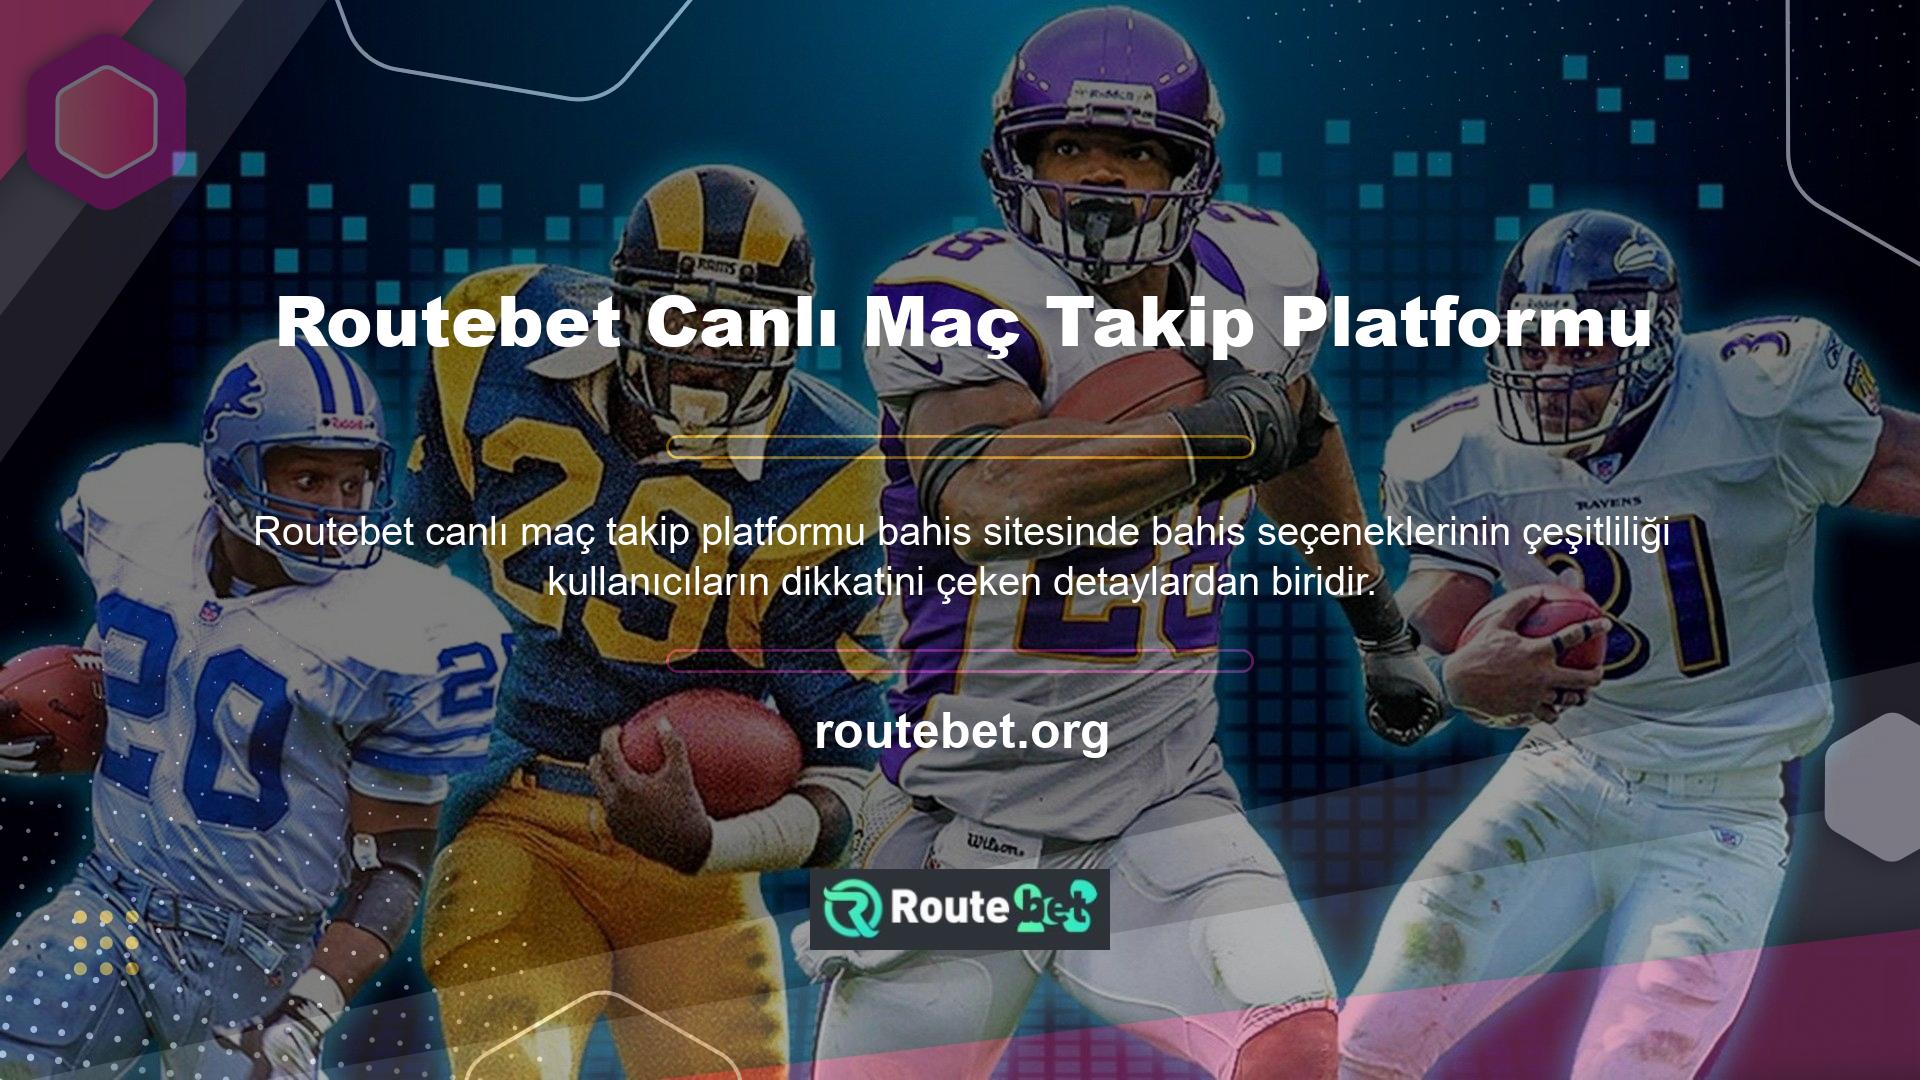 Bahis siteleri alanında en saygın sitelerden biri olan casino oyunları alanında, Routebet Gaming, dünyanın en iyi oyun sağlayıcıları tarafından hazırlanan geniş bir oyun yelpazesi sunmaktadır